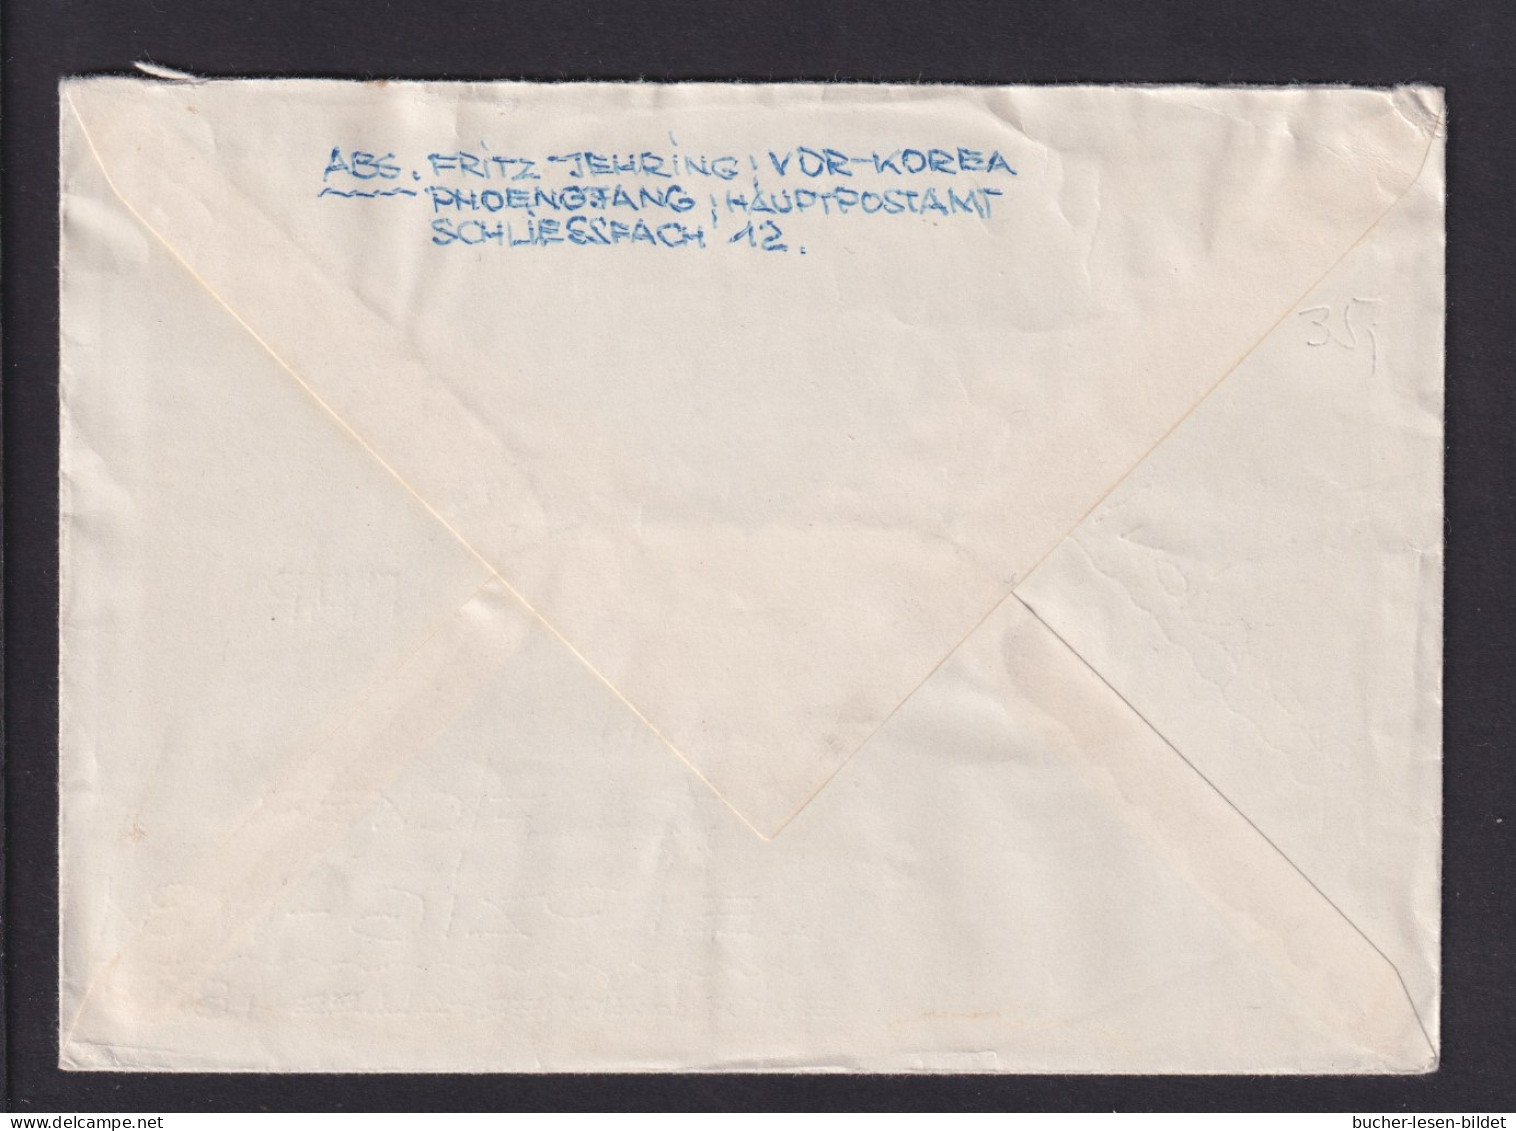 1961 - Mischfrankatur Auf Luftpost-Brief Ab Pyongyang Nach Leipzig - Corea Del Norte